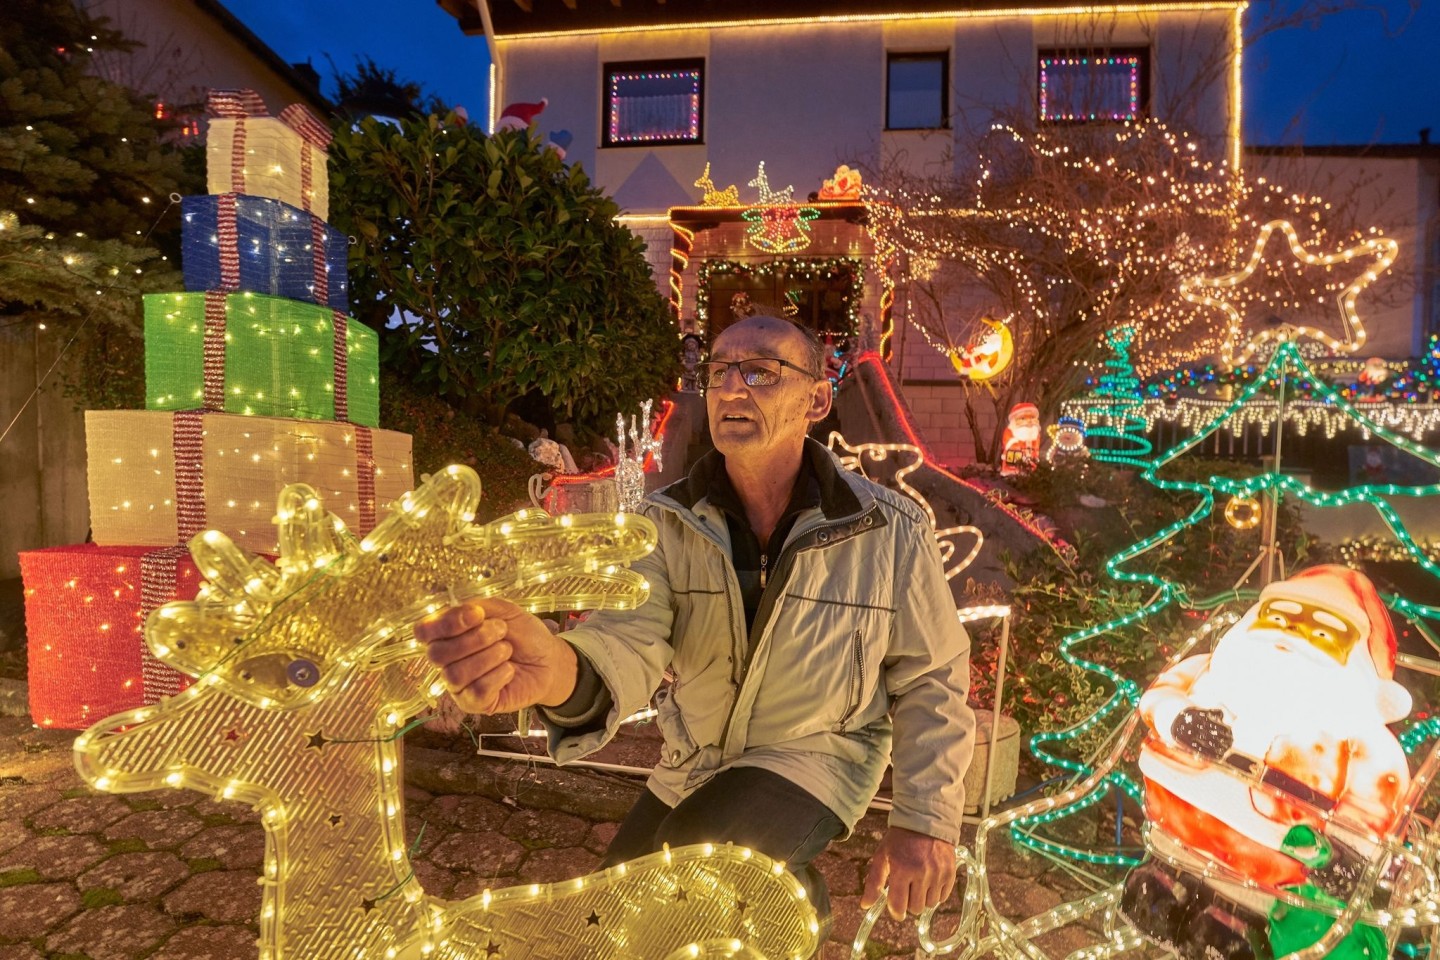 Rentner Josef Johann baut vor seinem Haus im Moseldorf Klotten bunte leuchtende Weihnachtsdekoration auf.